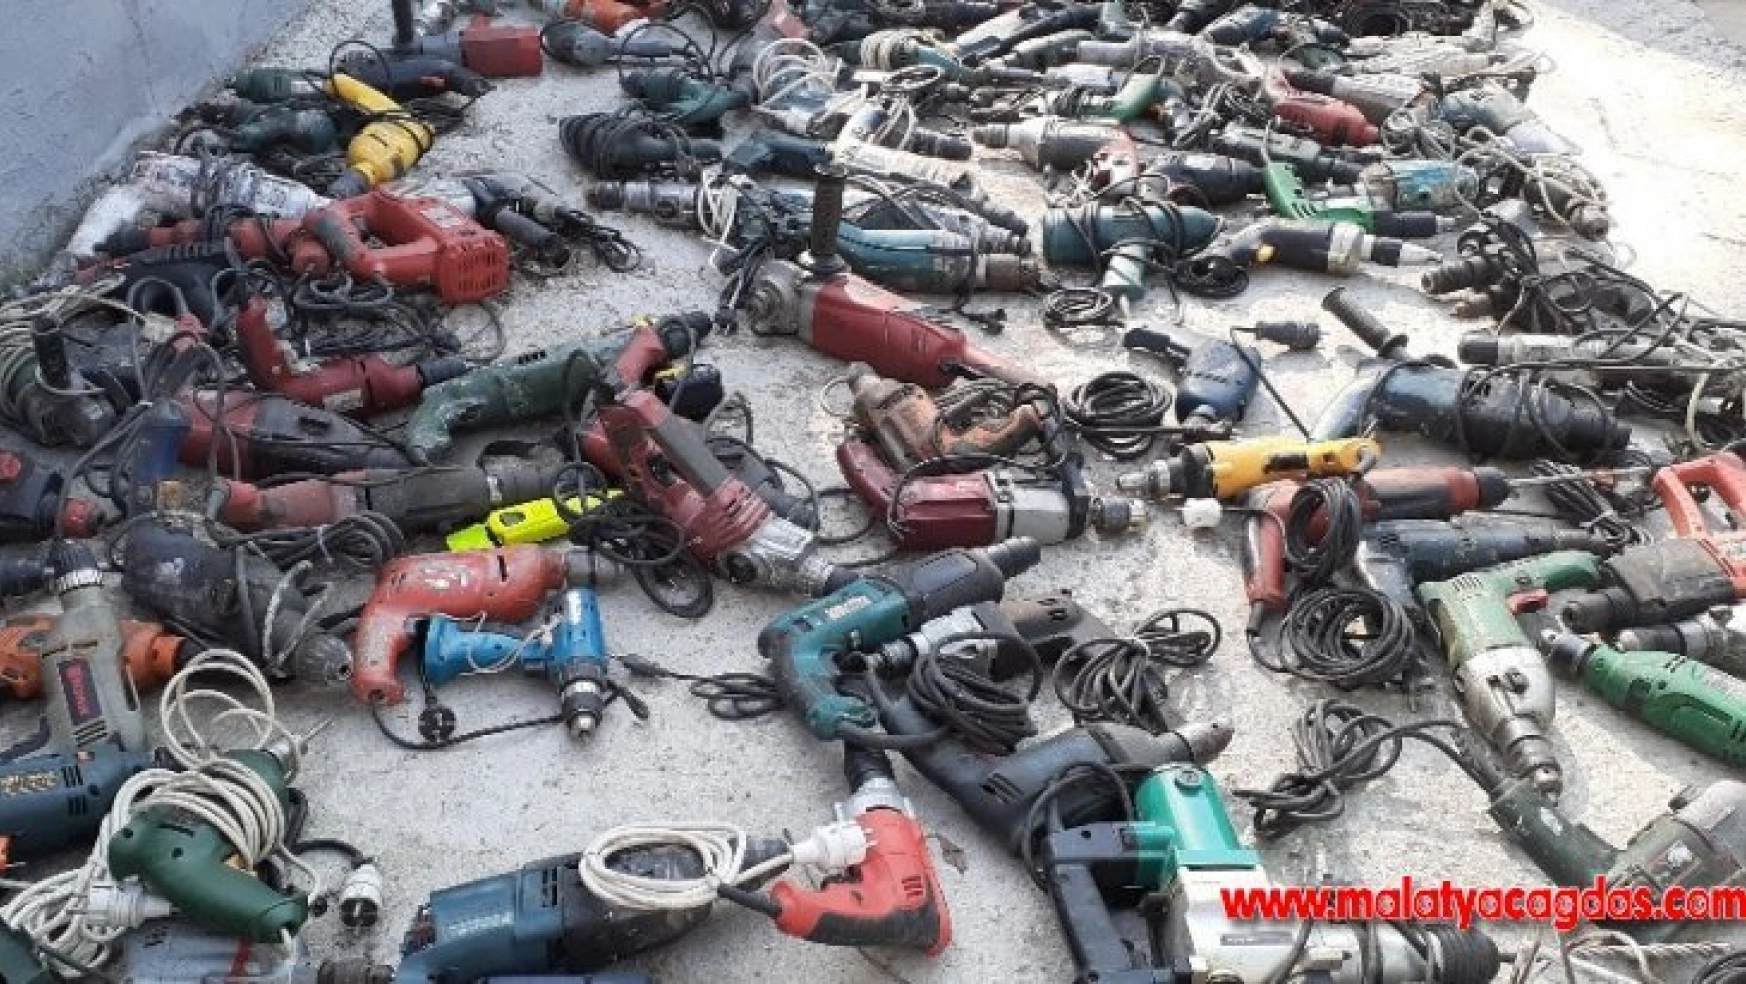 Ankara polisi çalıntı 380 adet elektrikli inşaat malzemesini tek tek buldu